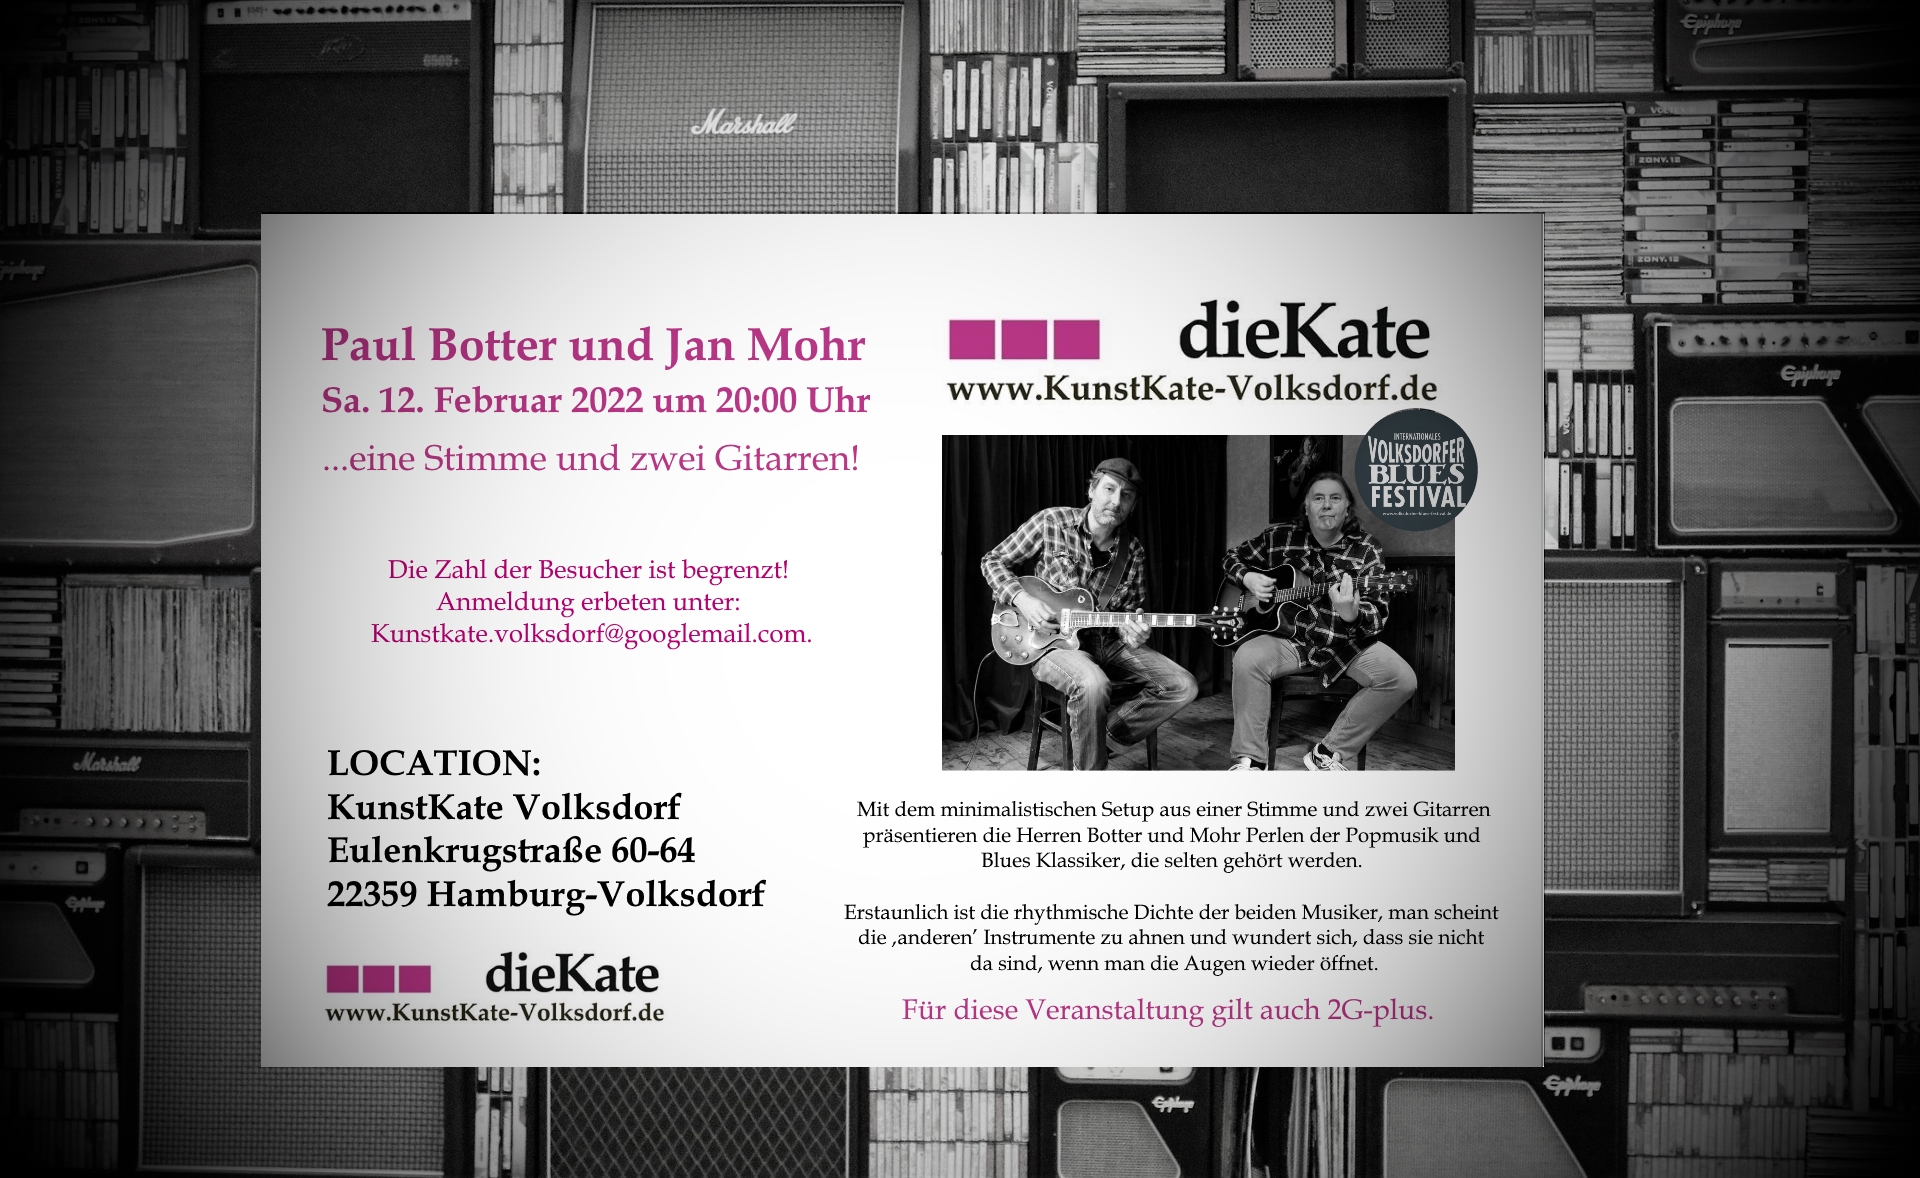 12.02.2022 – Paul Botter & Jan Mohr. Eine Stimme und zwei Gitarren!